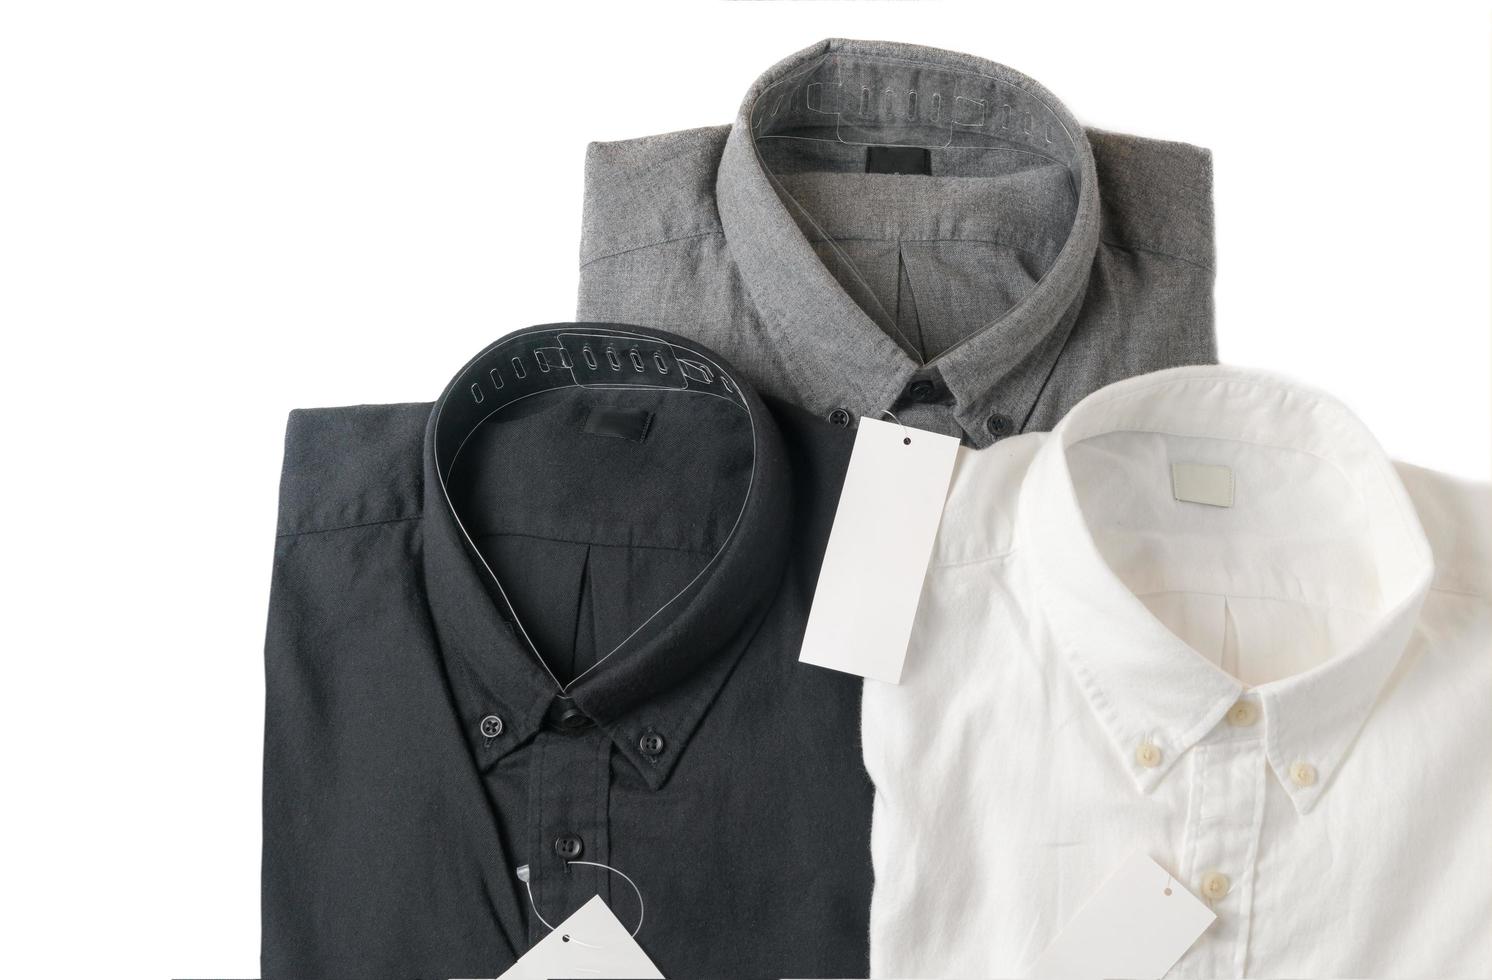 Weiss, grau und schwarz Hemd mit leer Preis Etikett foto